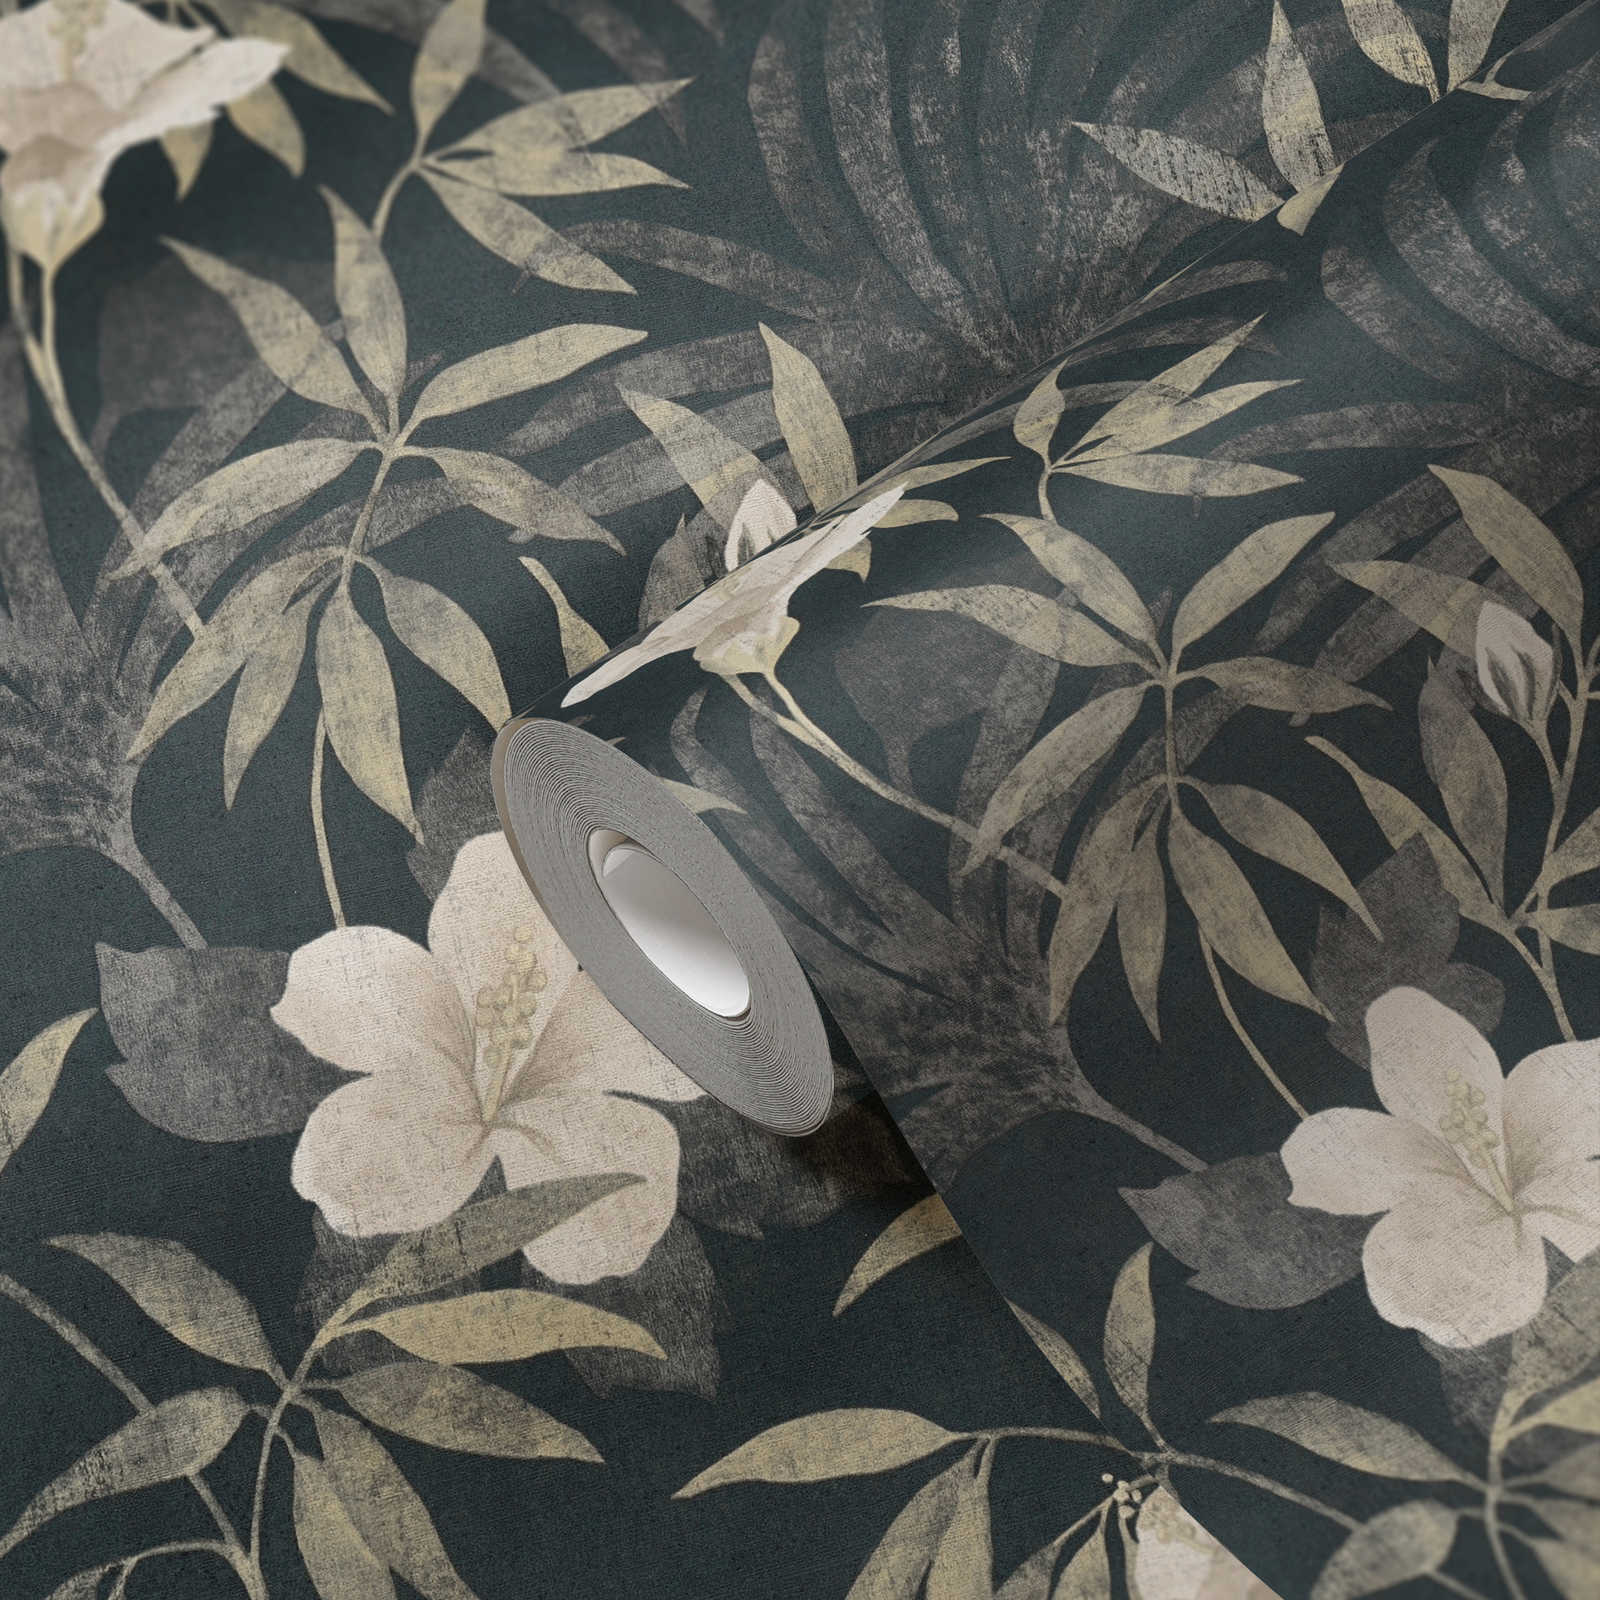             Jungle behang retro patroon met tropisch design - bruin, grijs, zwart
        